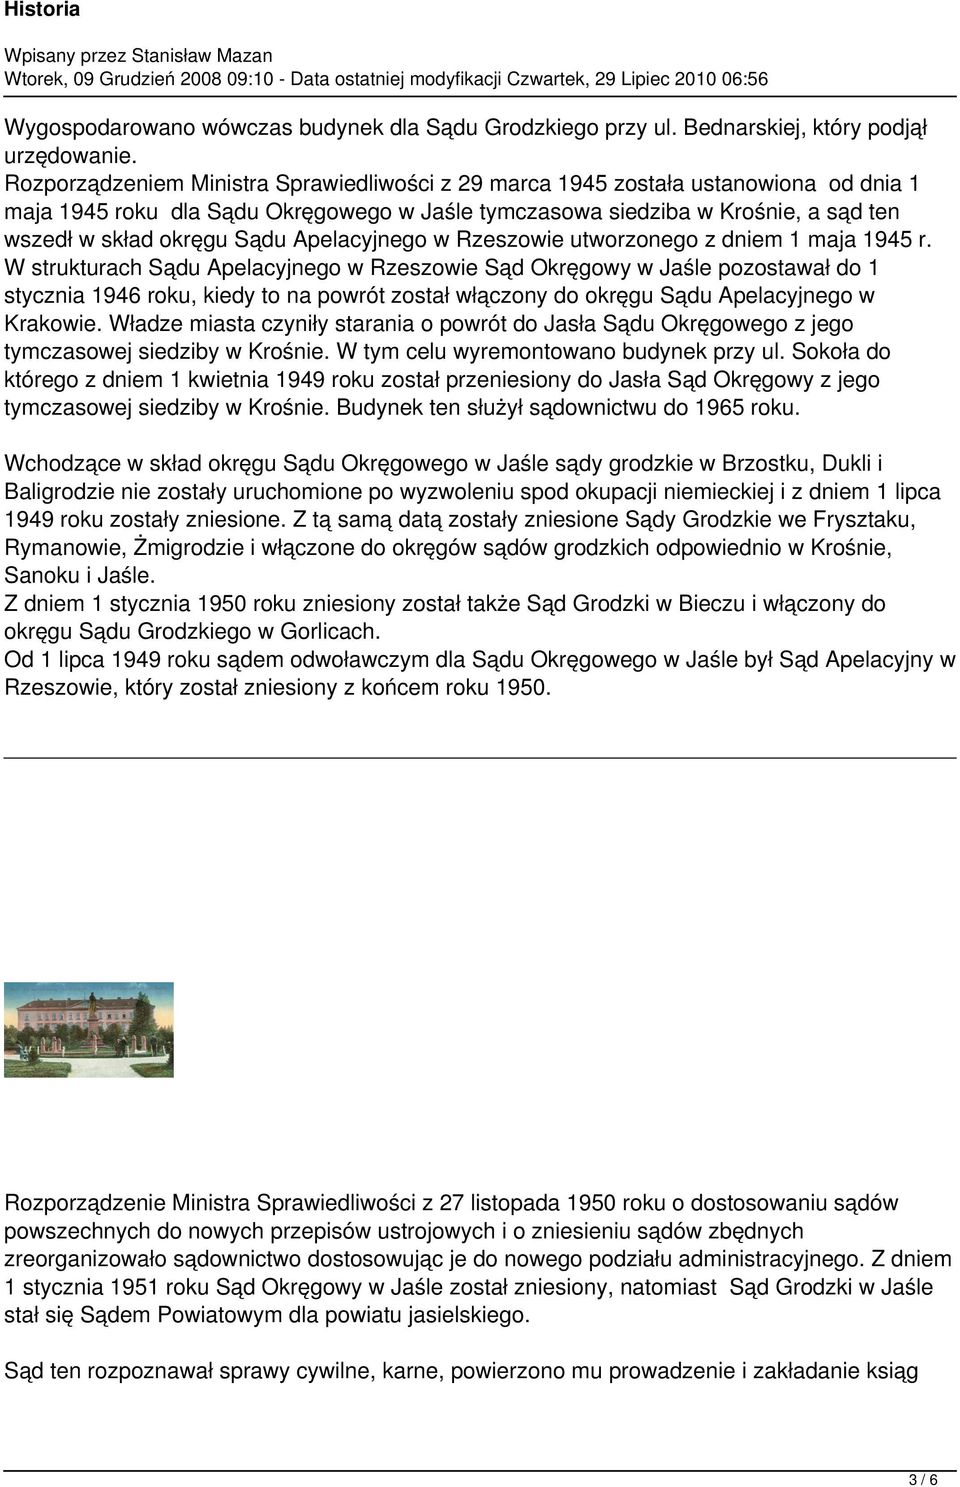 Apelacyjnego w Rzeszowie utworzonego z dniem 1 maja 1945 r.